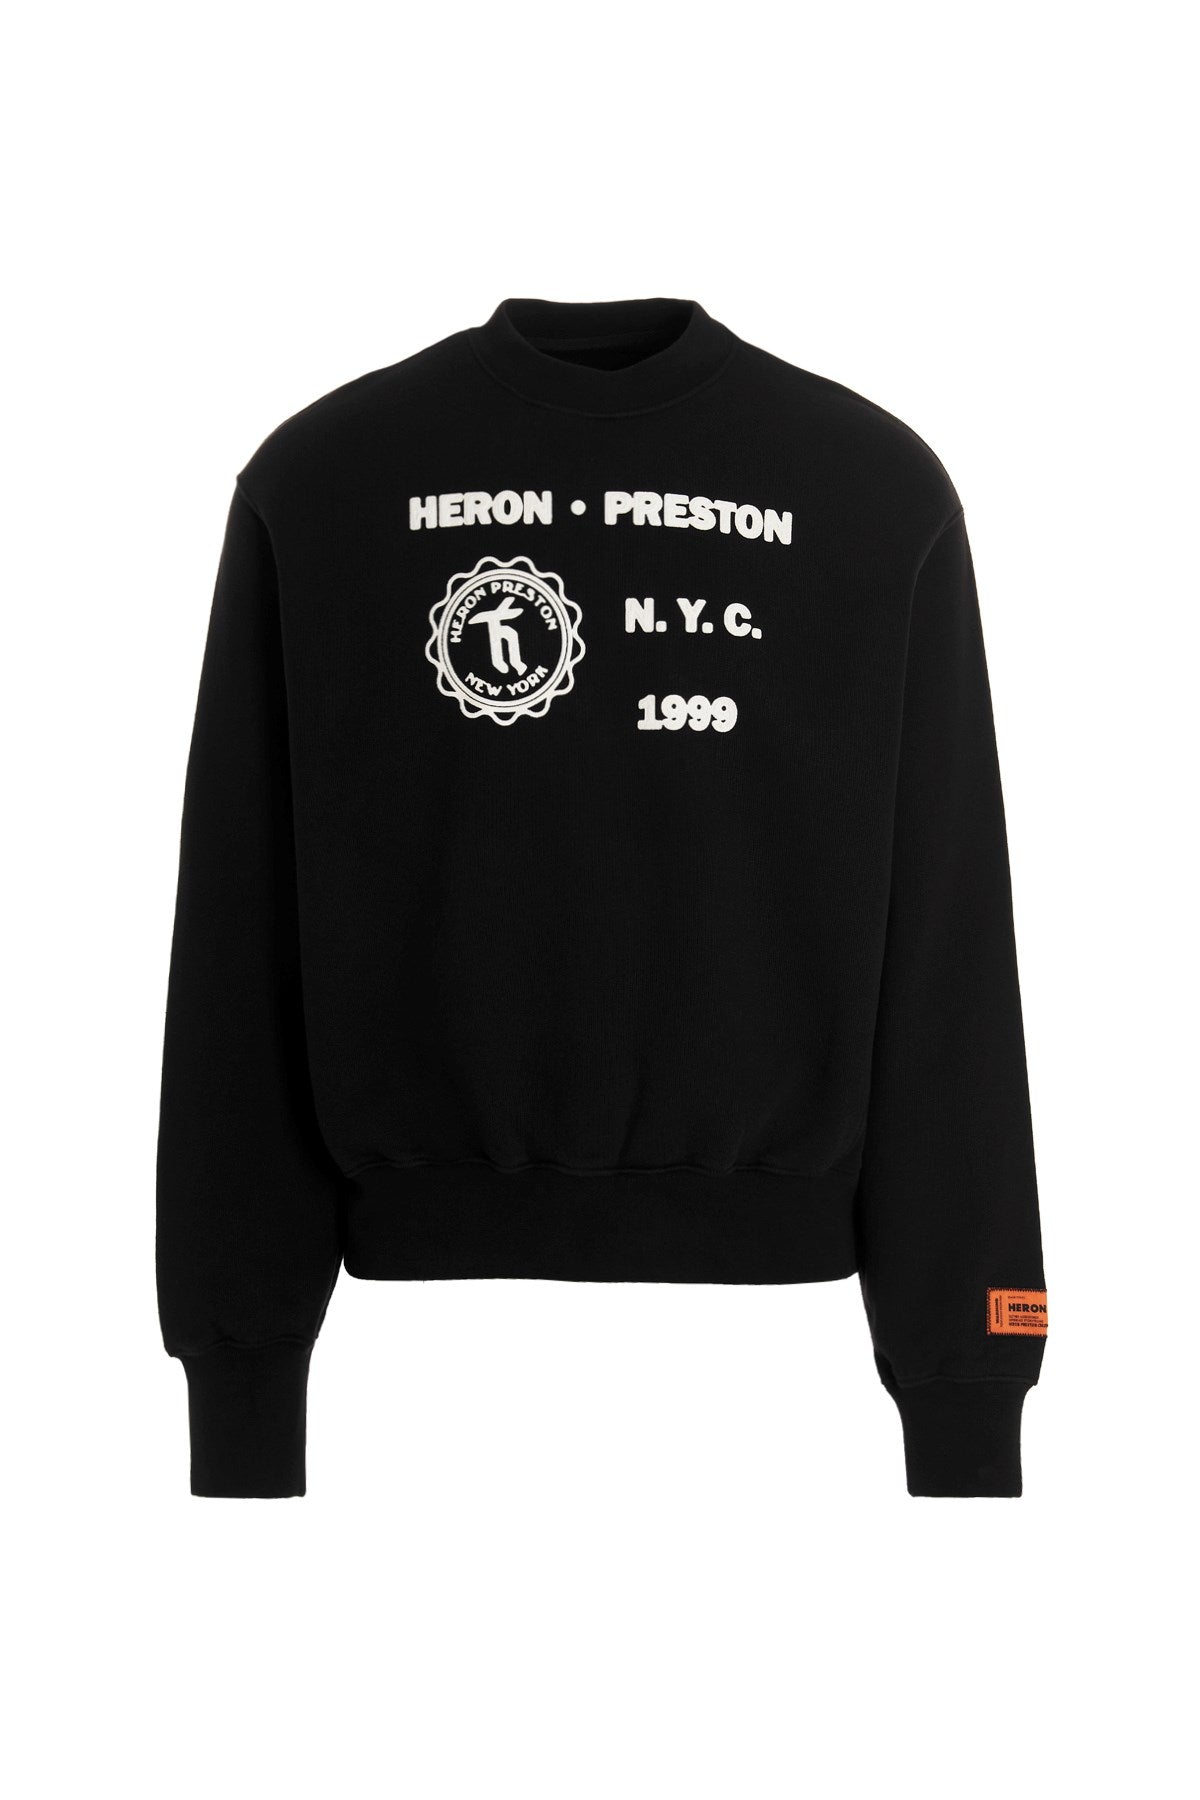 Heron Preston Medieval Sweatshirt - S - Escape Menswear